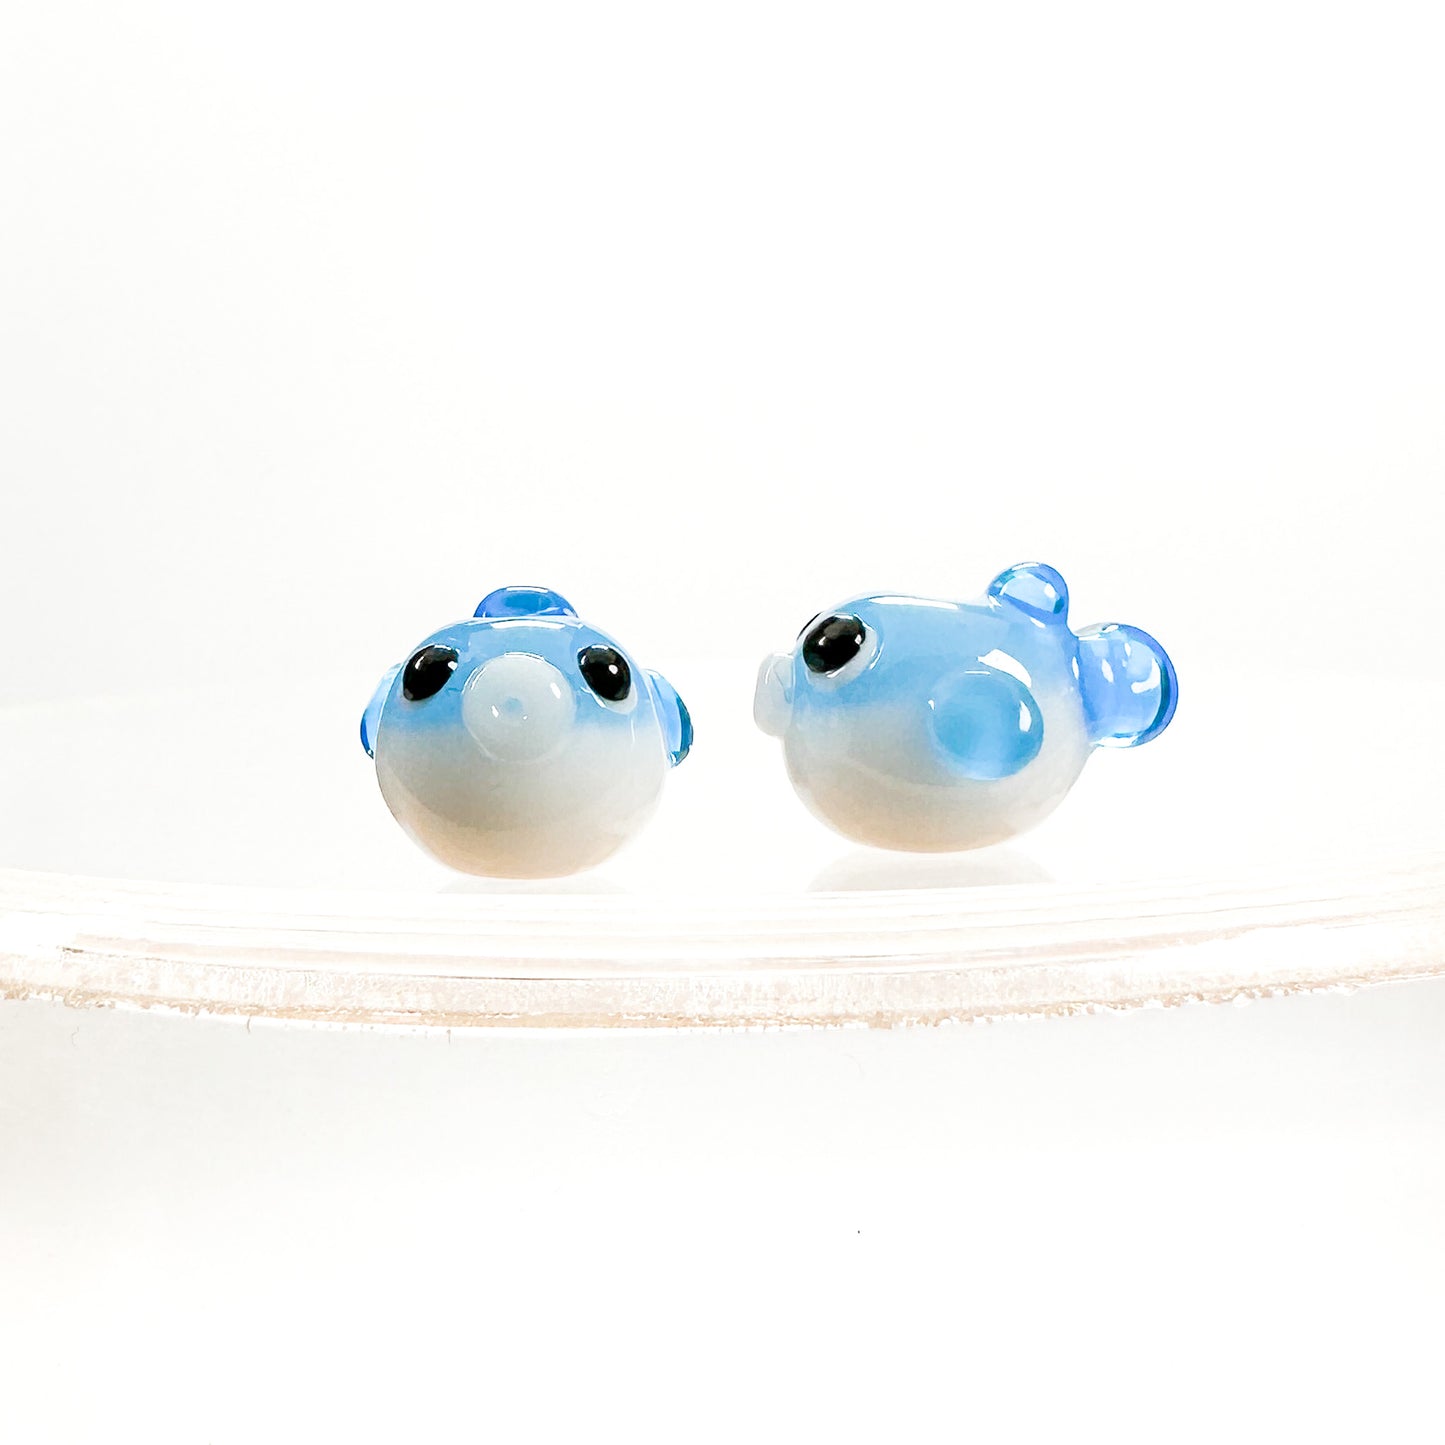 Chibi Handmade Glass Beads - Blowfish-The Bead Gallery Honolulu